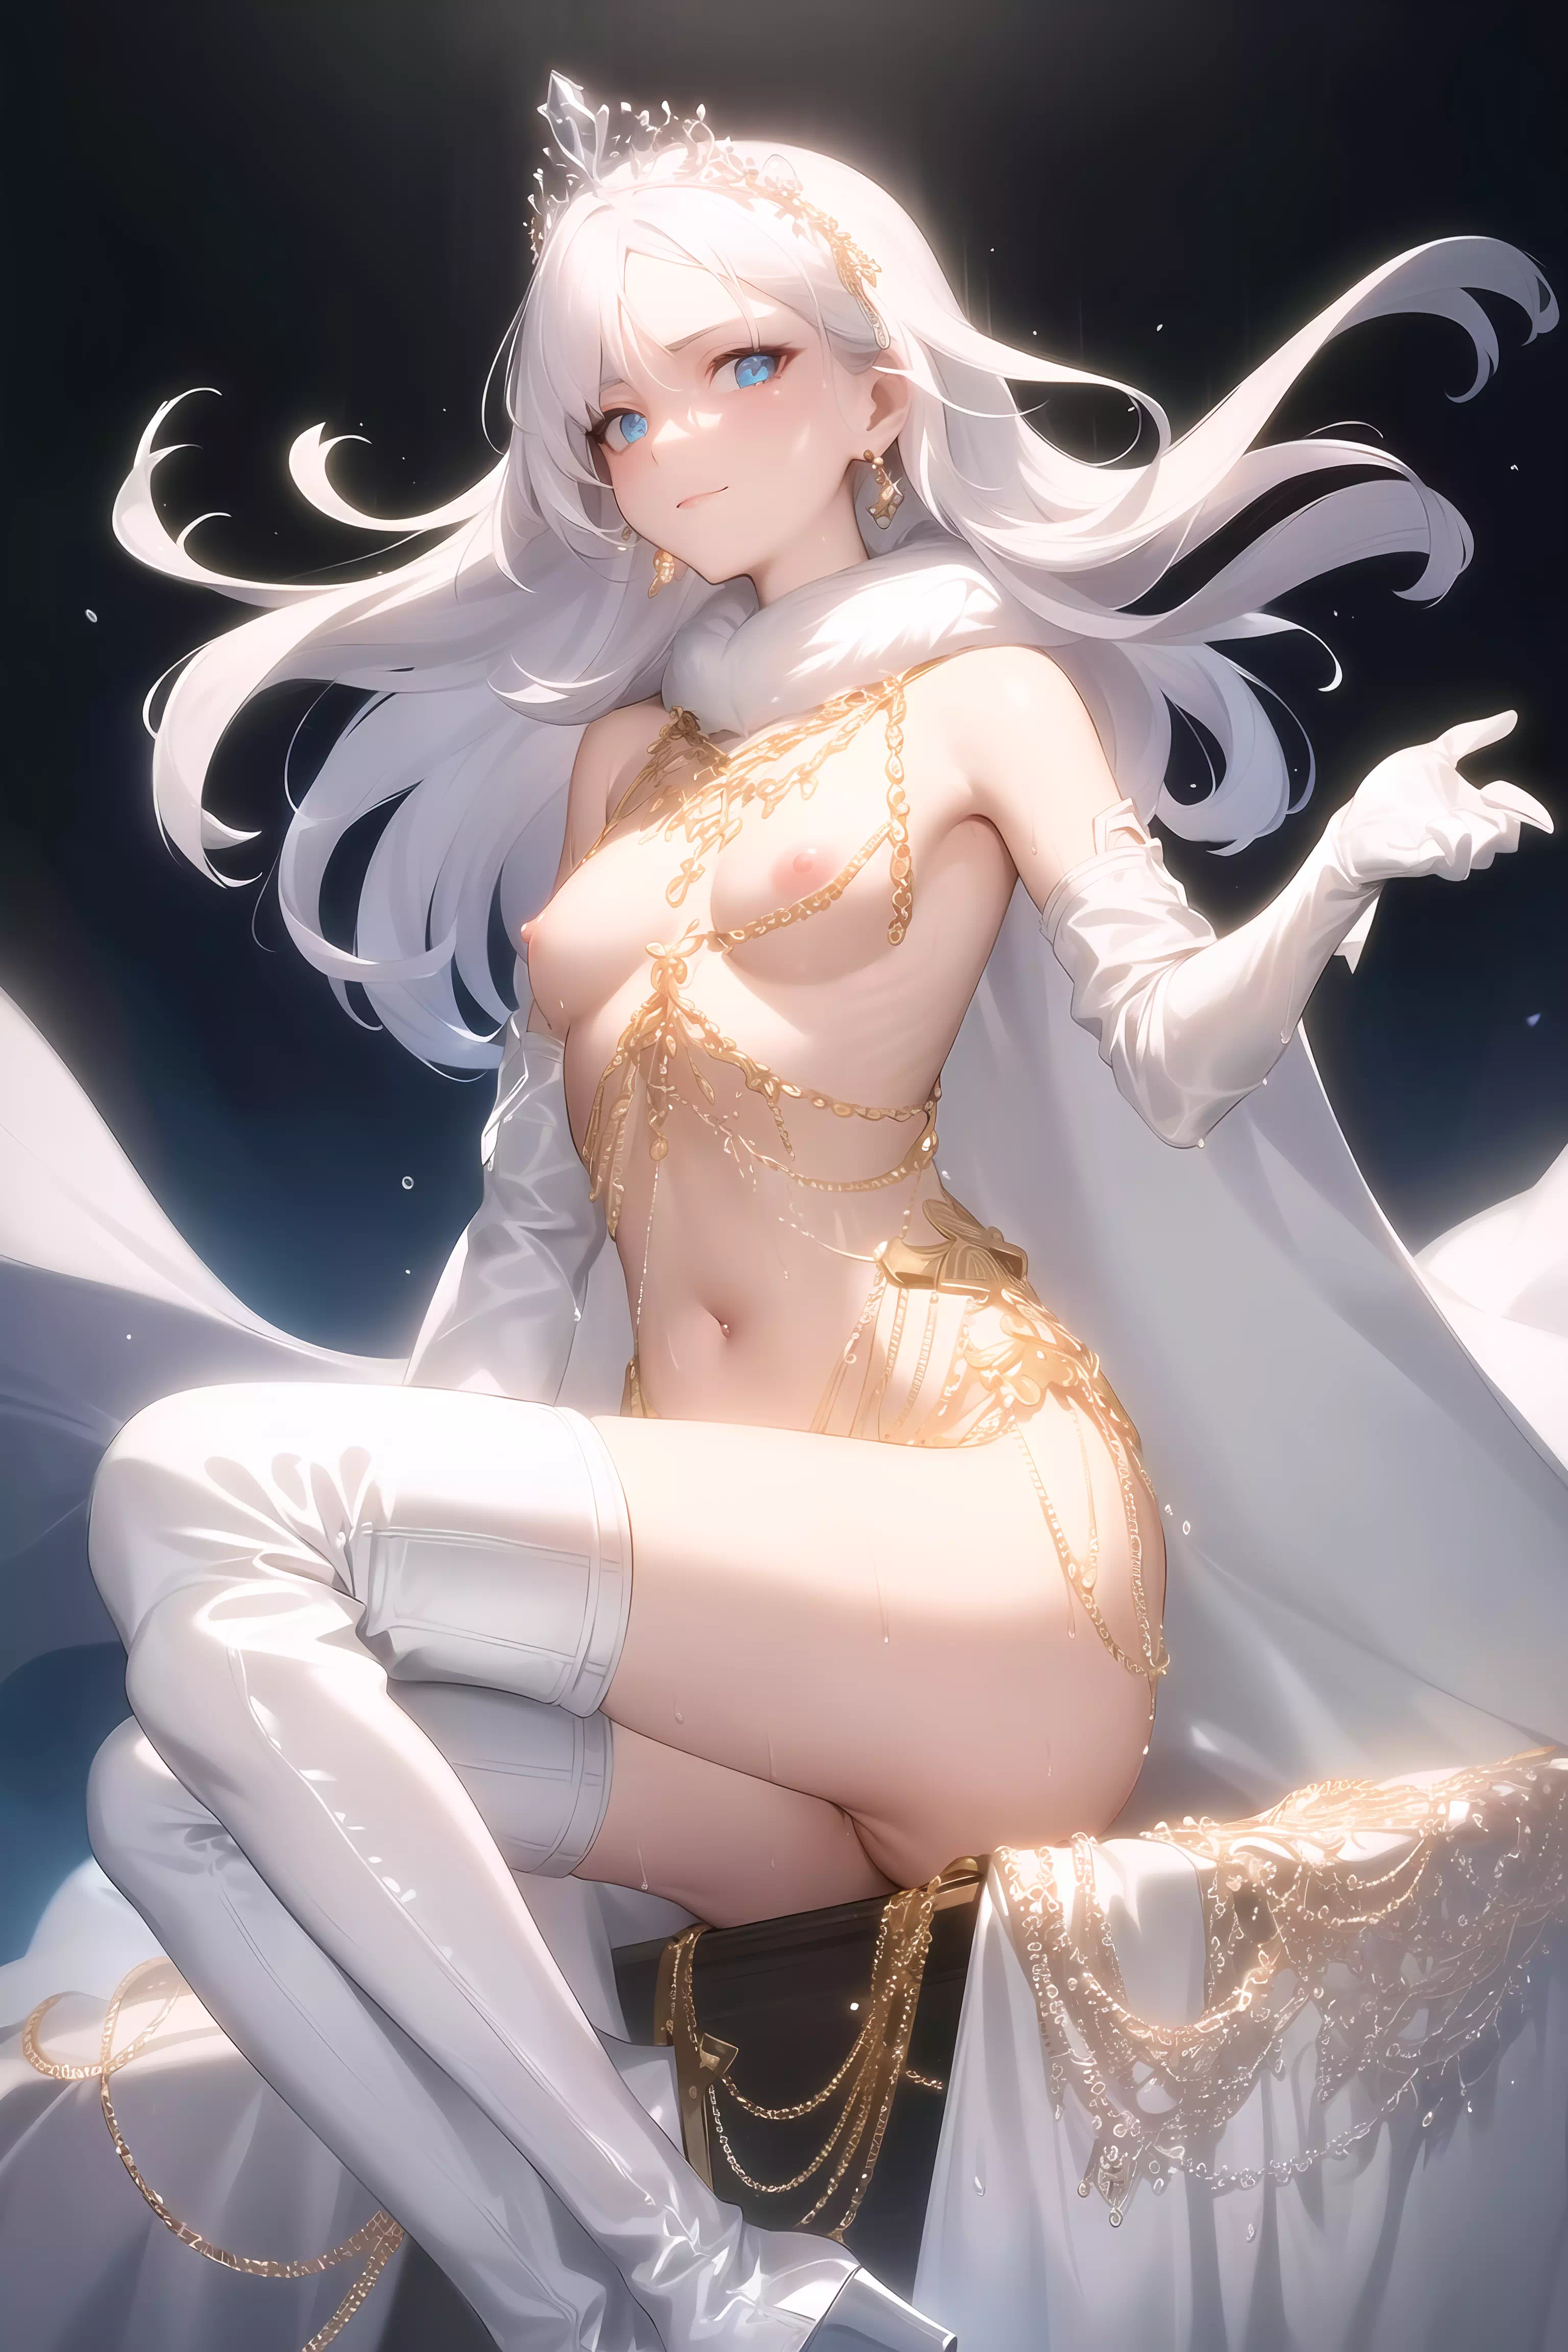 White queen